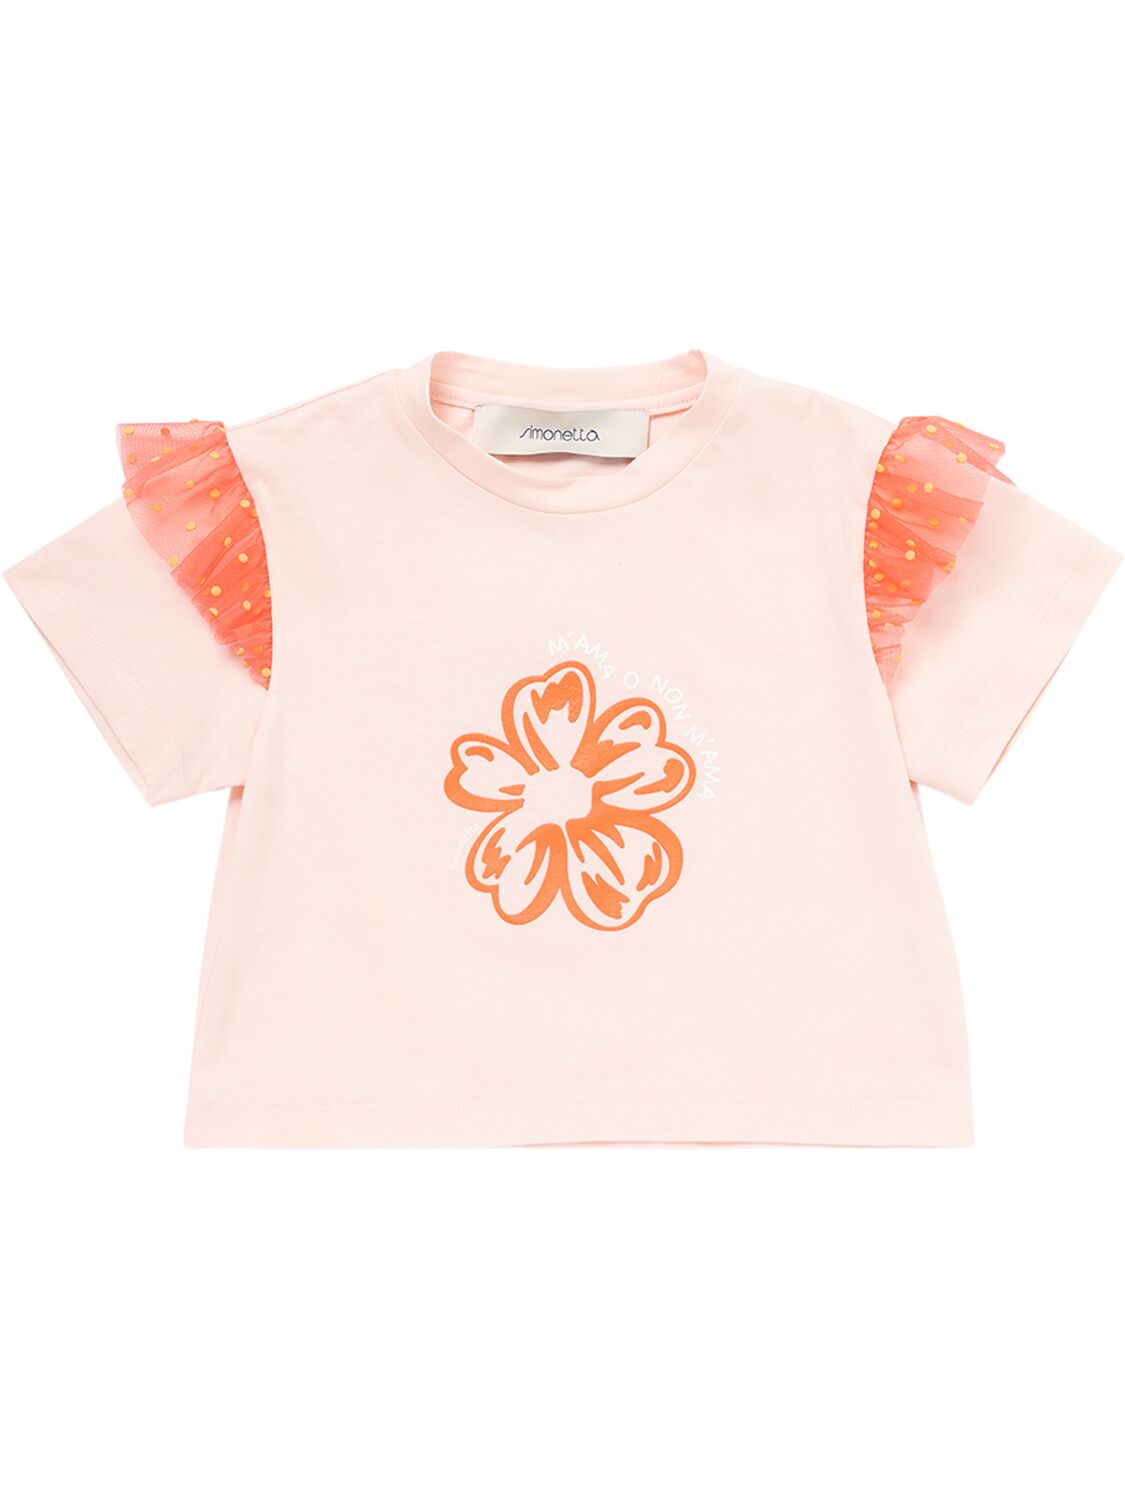 Simonetta Kids' Cotton Jersey & Tulle T-shirt In Pink